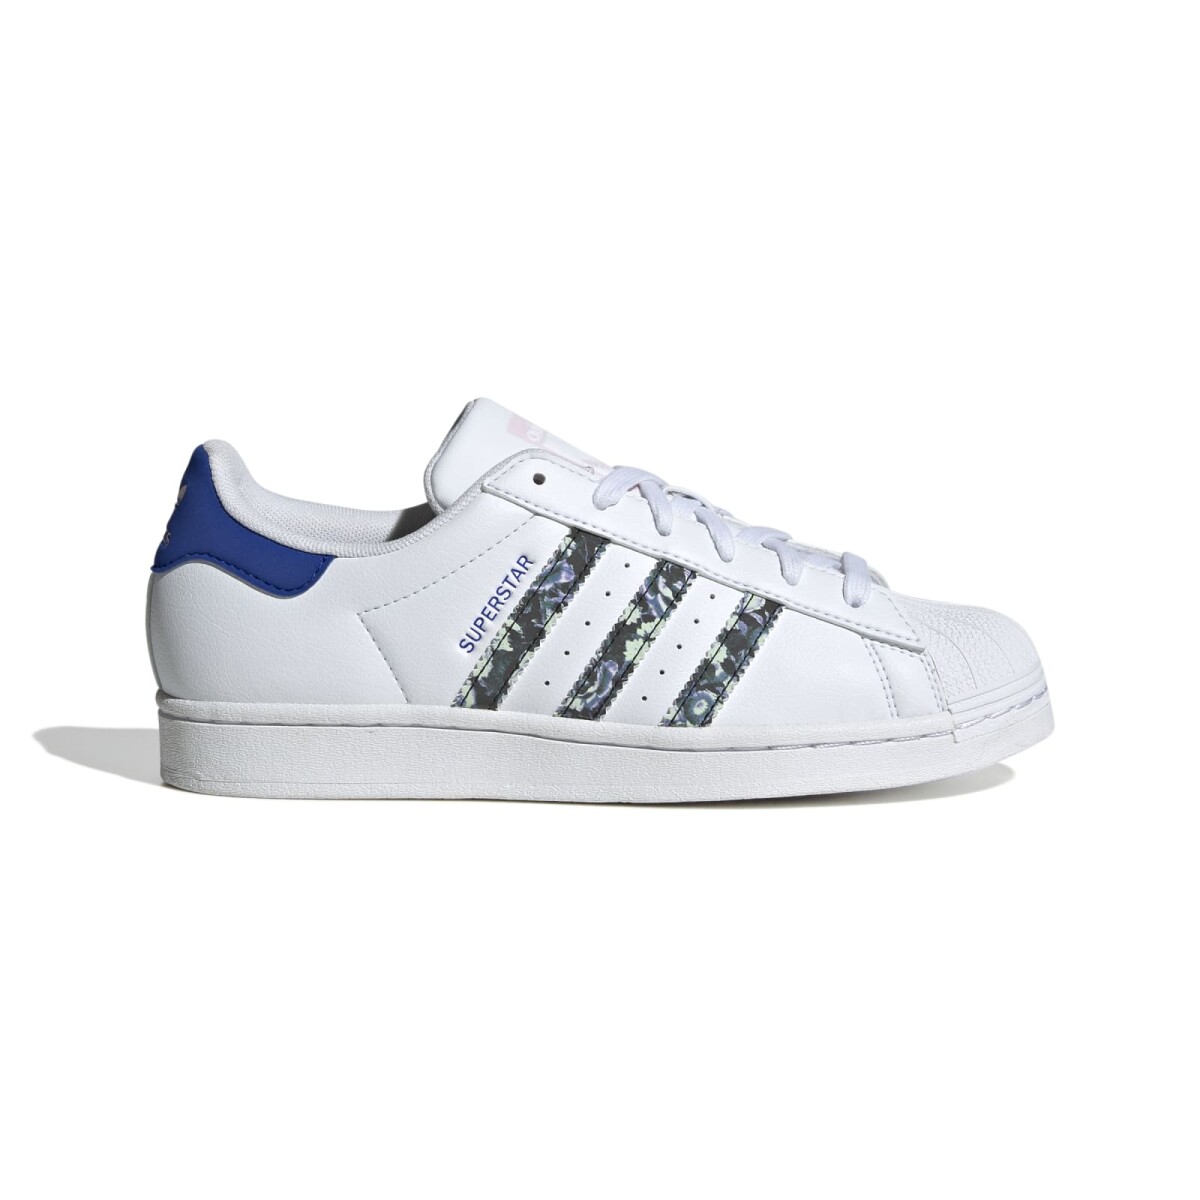 Adidas Superstar, las zapatillas de la puntera más icónica, con un